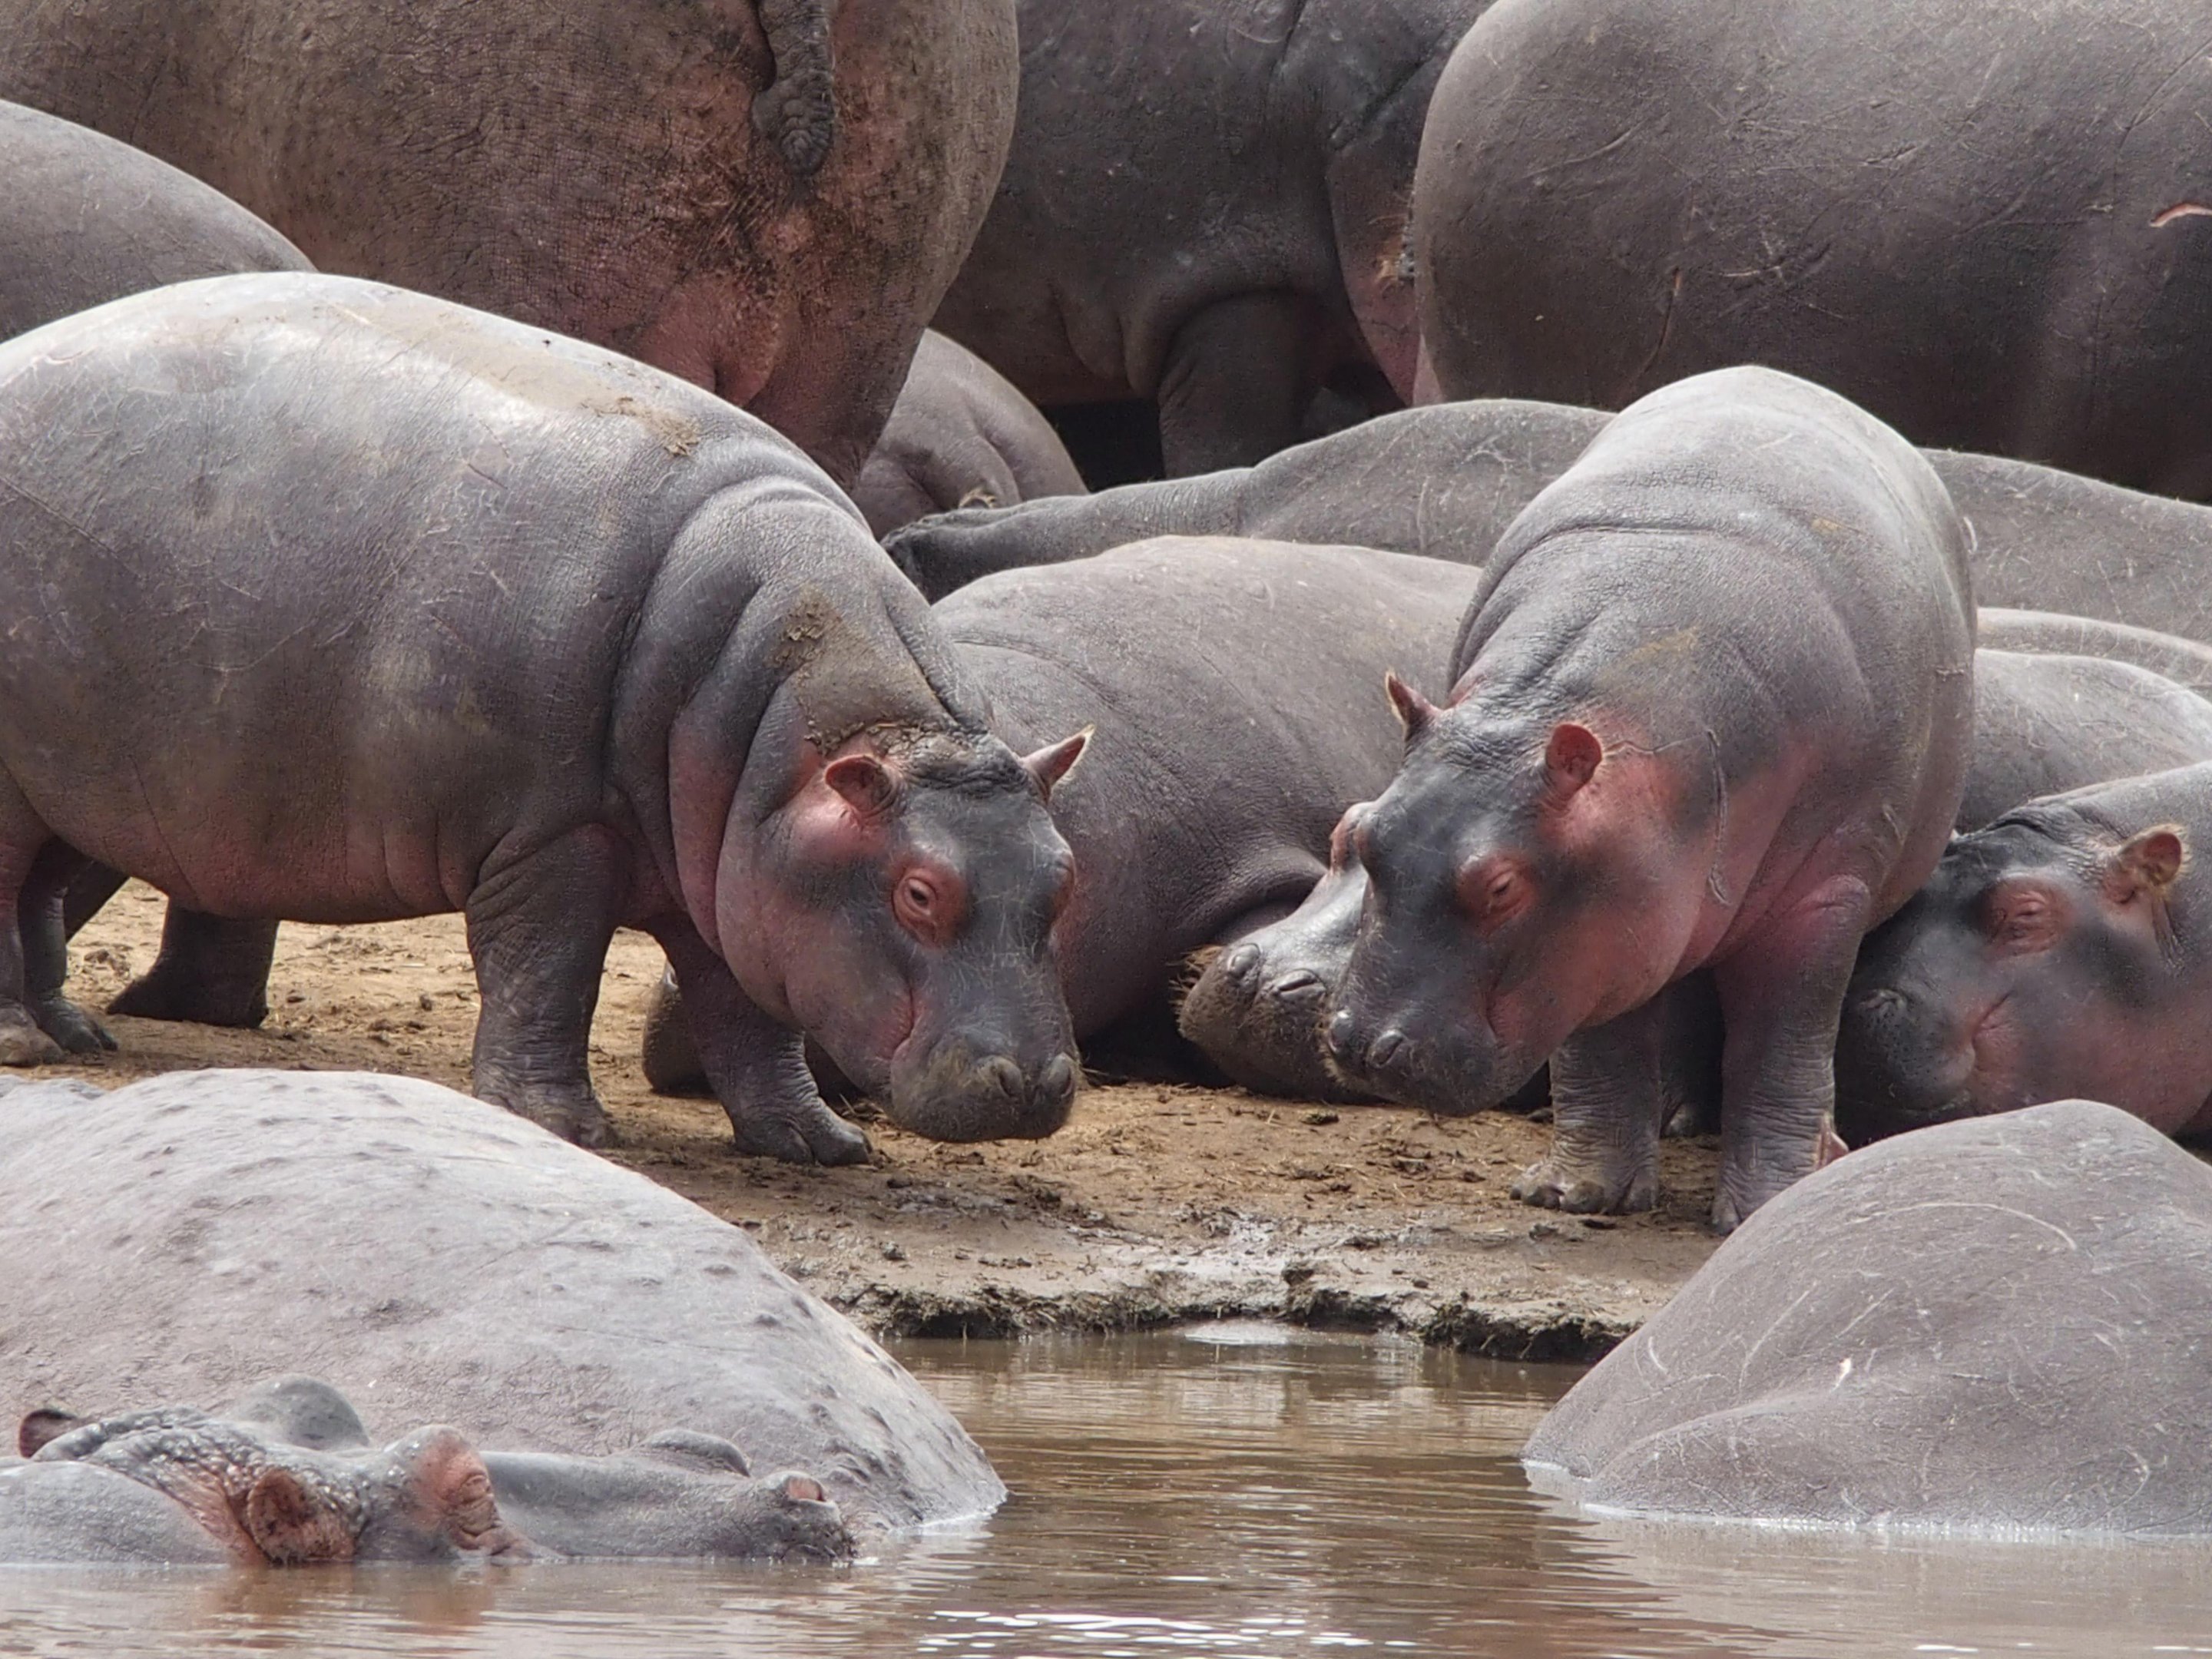 Gravações de voz podem ser usadas para reduzir agressividade entre grupos de hipopótamos. (Fonte: Unsplash/Michael Rodock)